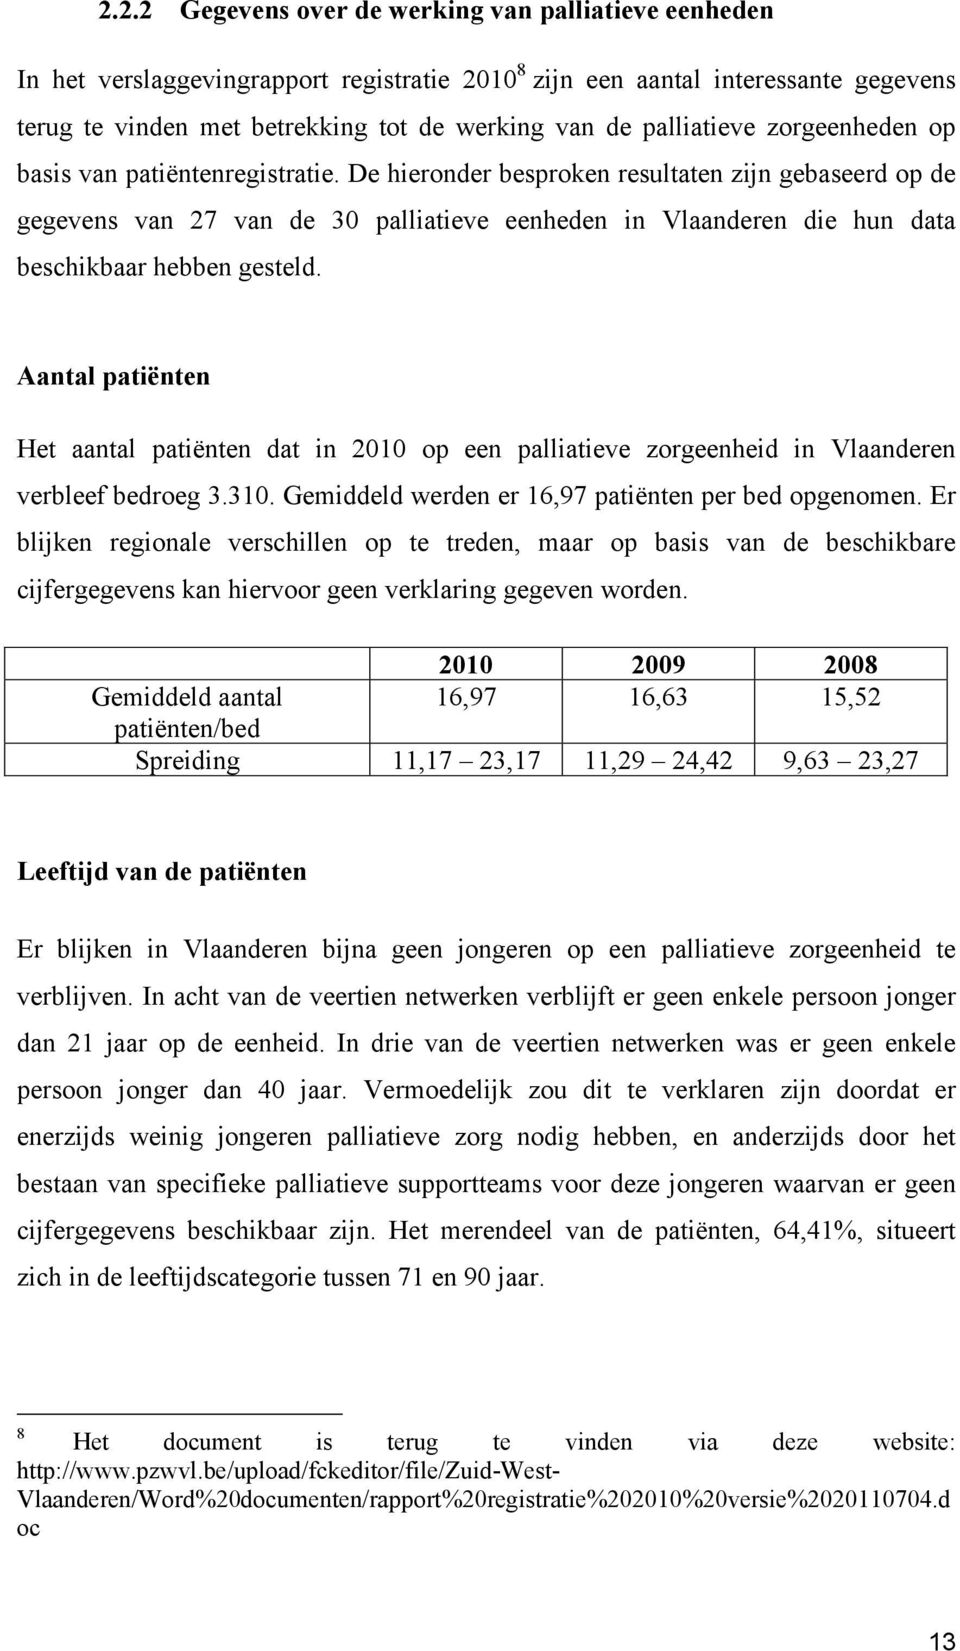 De hieronder besproken resultaten zijn gebaseerd op de gegevens van 27 van de 30 palliatieve eenheden in Vlaanderen die hun data beschikbaar hebben gesteld.